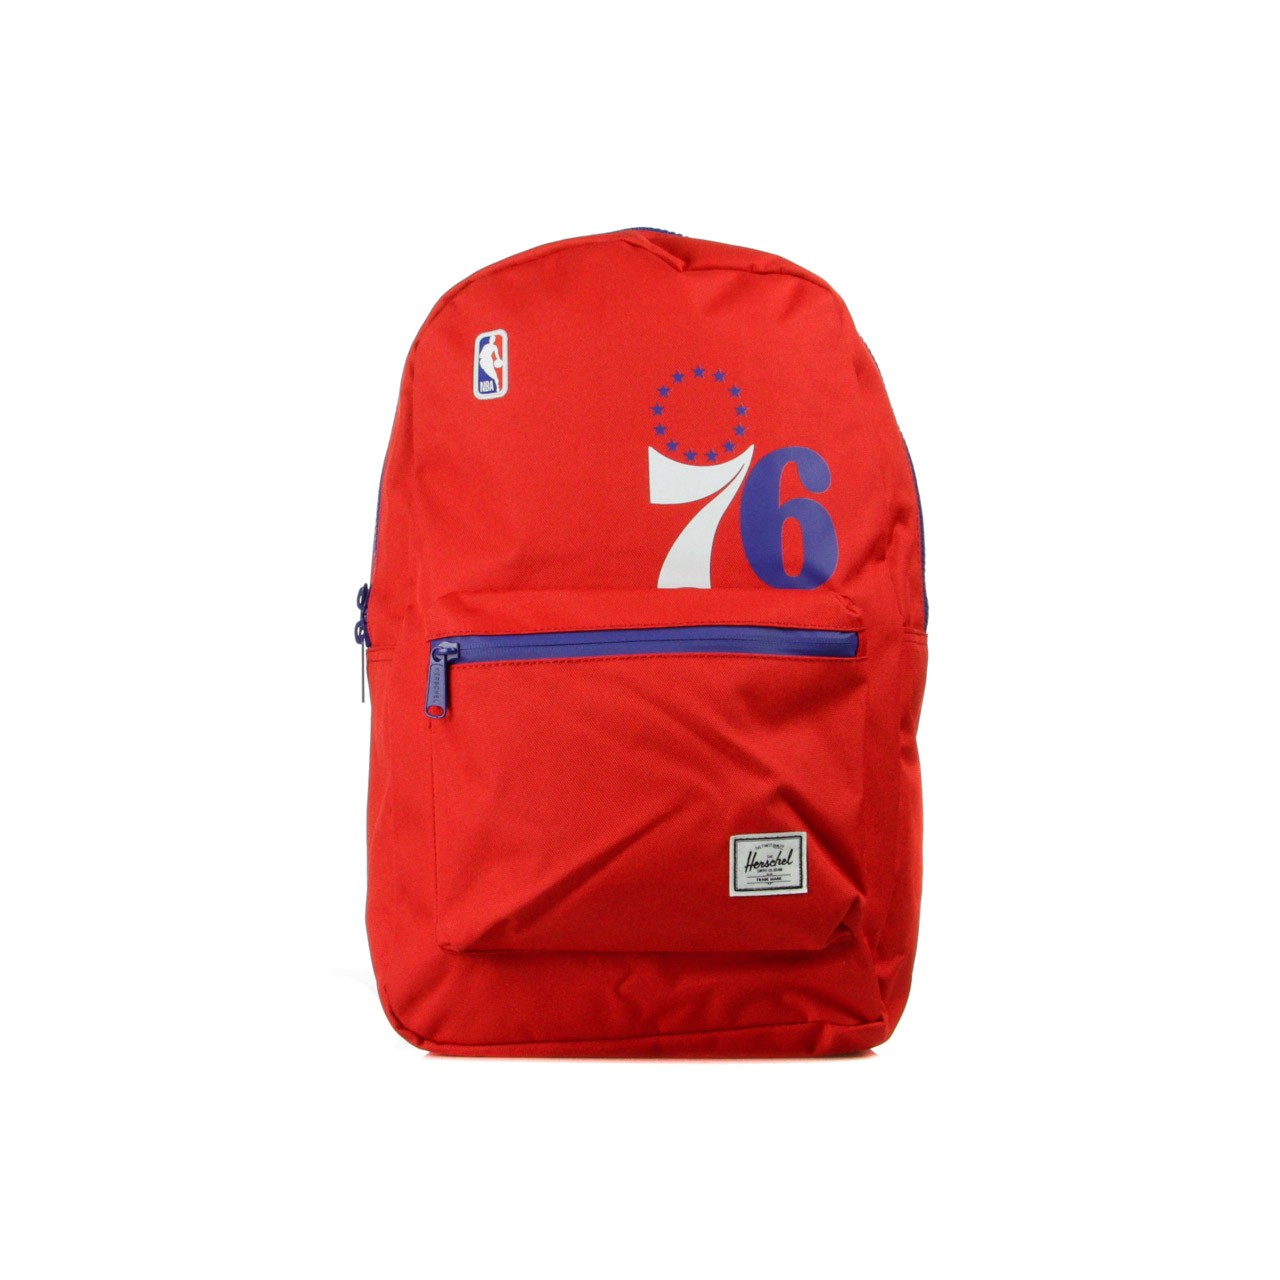 Settlement Philadelphia 76ers Men's Backpack Red/blue